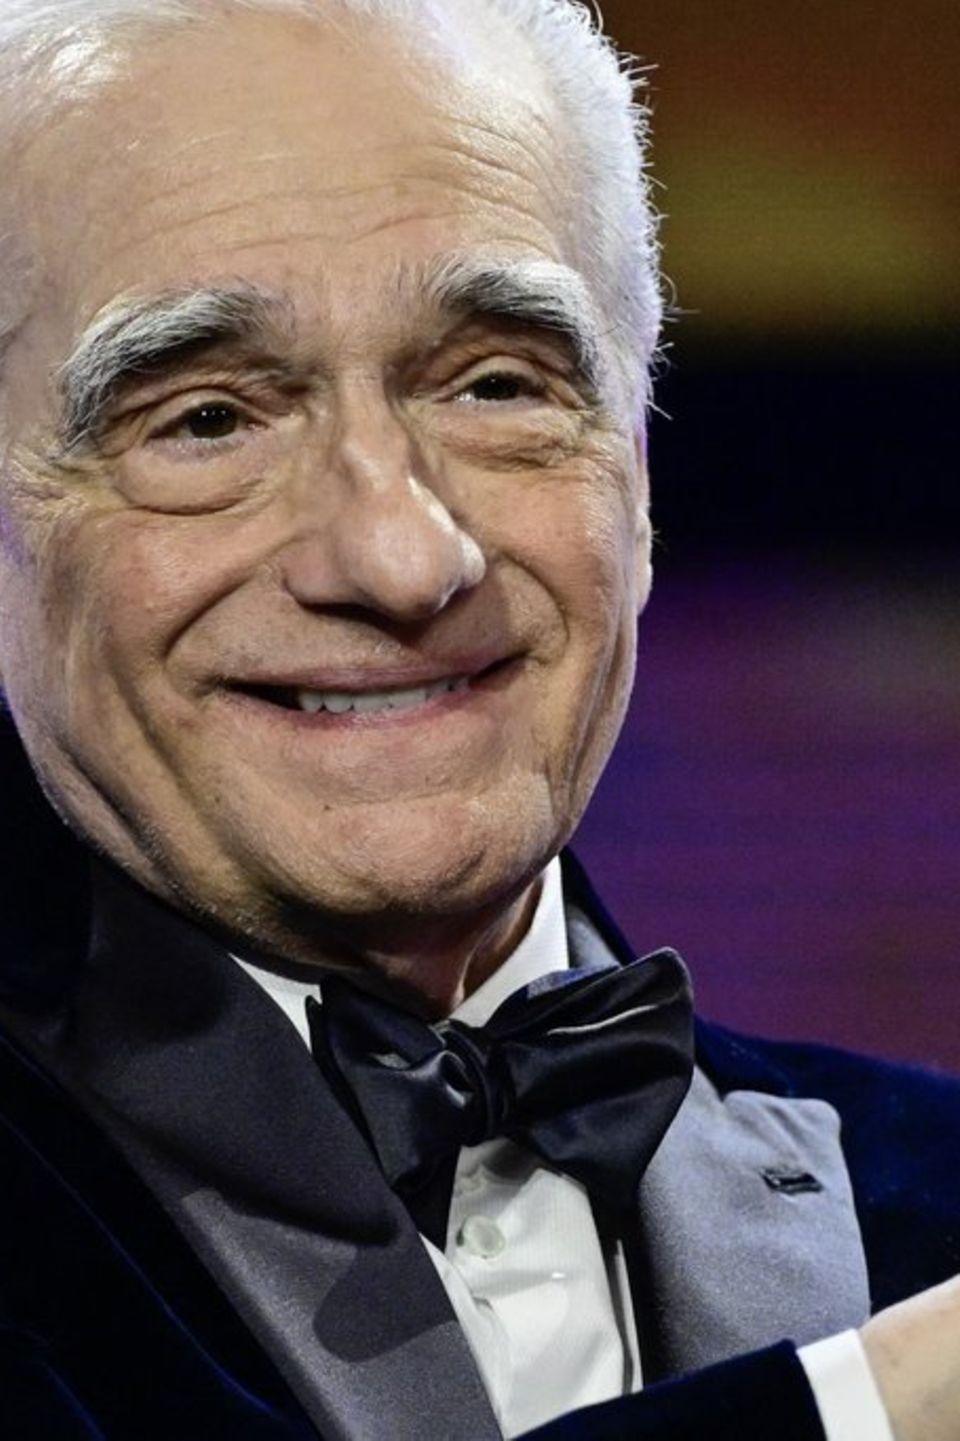 Martin Scorsese hält den Preis für sein Lebenswerk in die Kameras der anwesenden Fotografen.